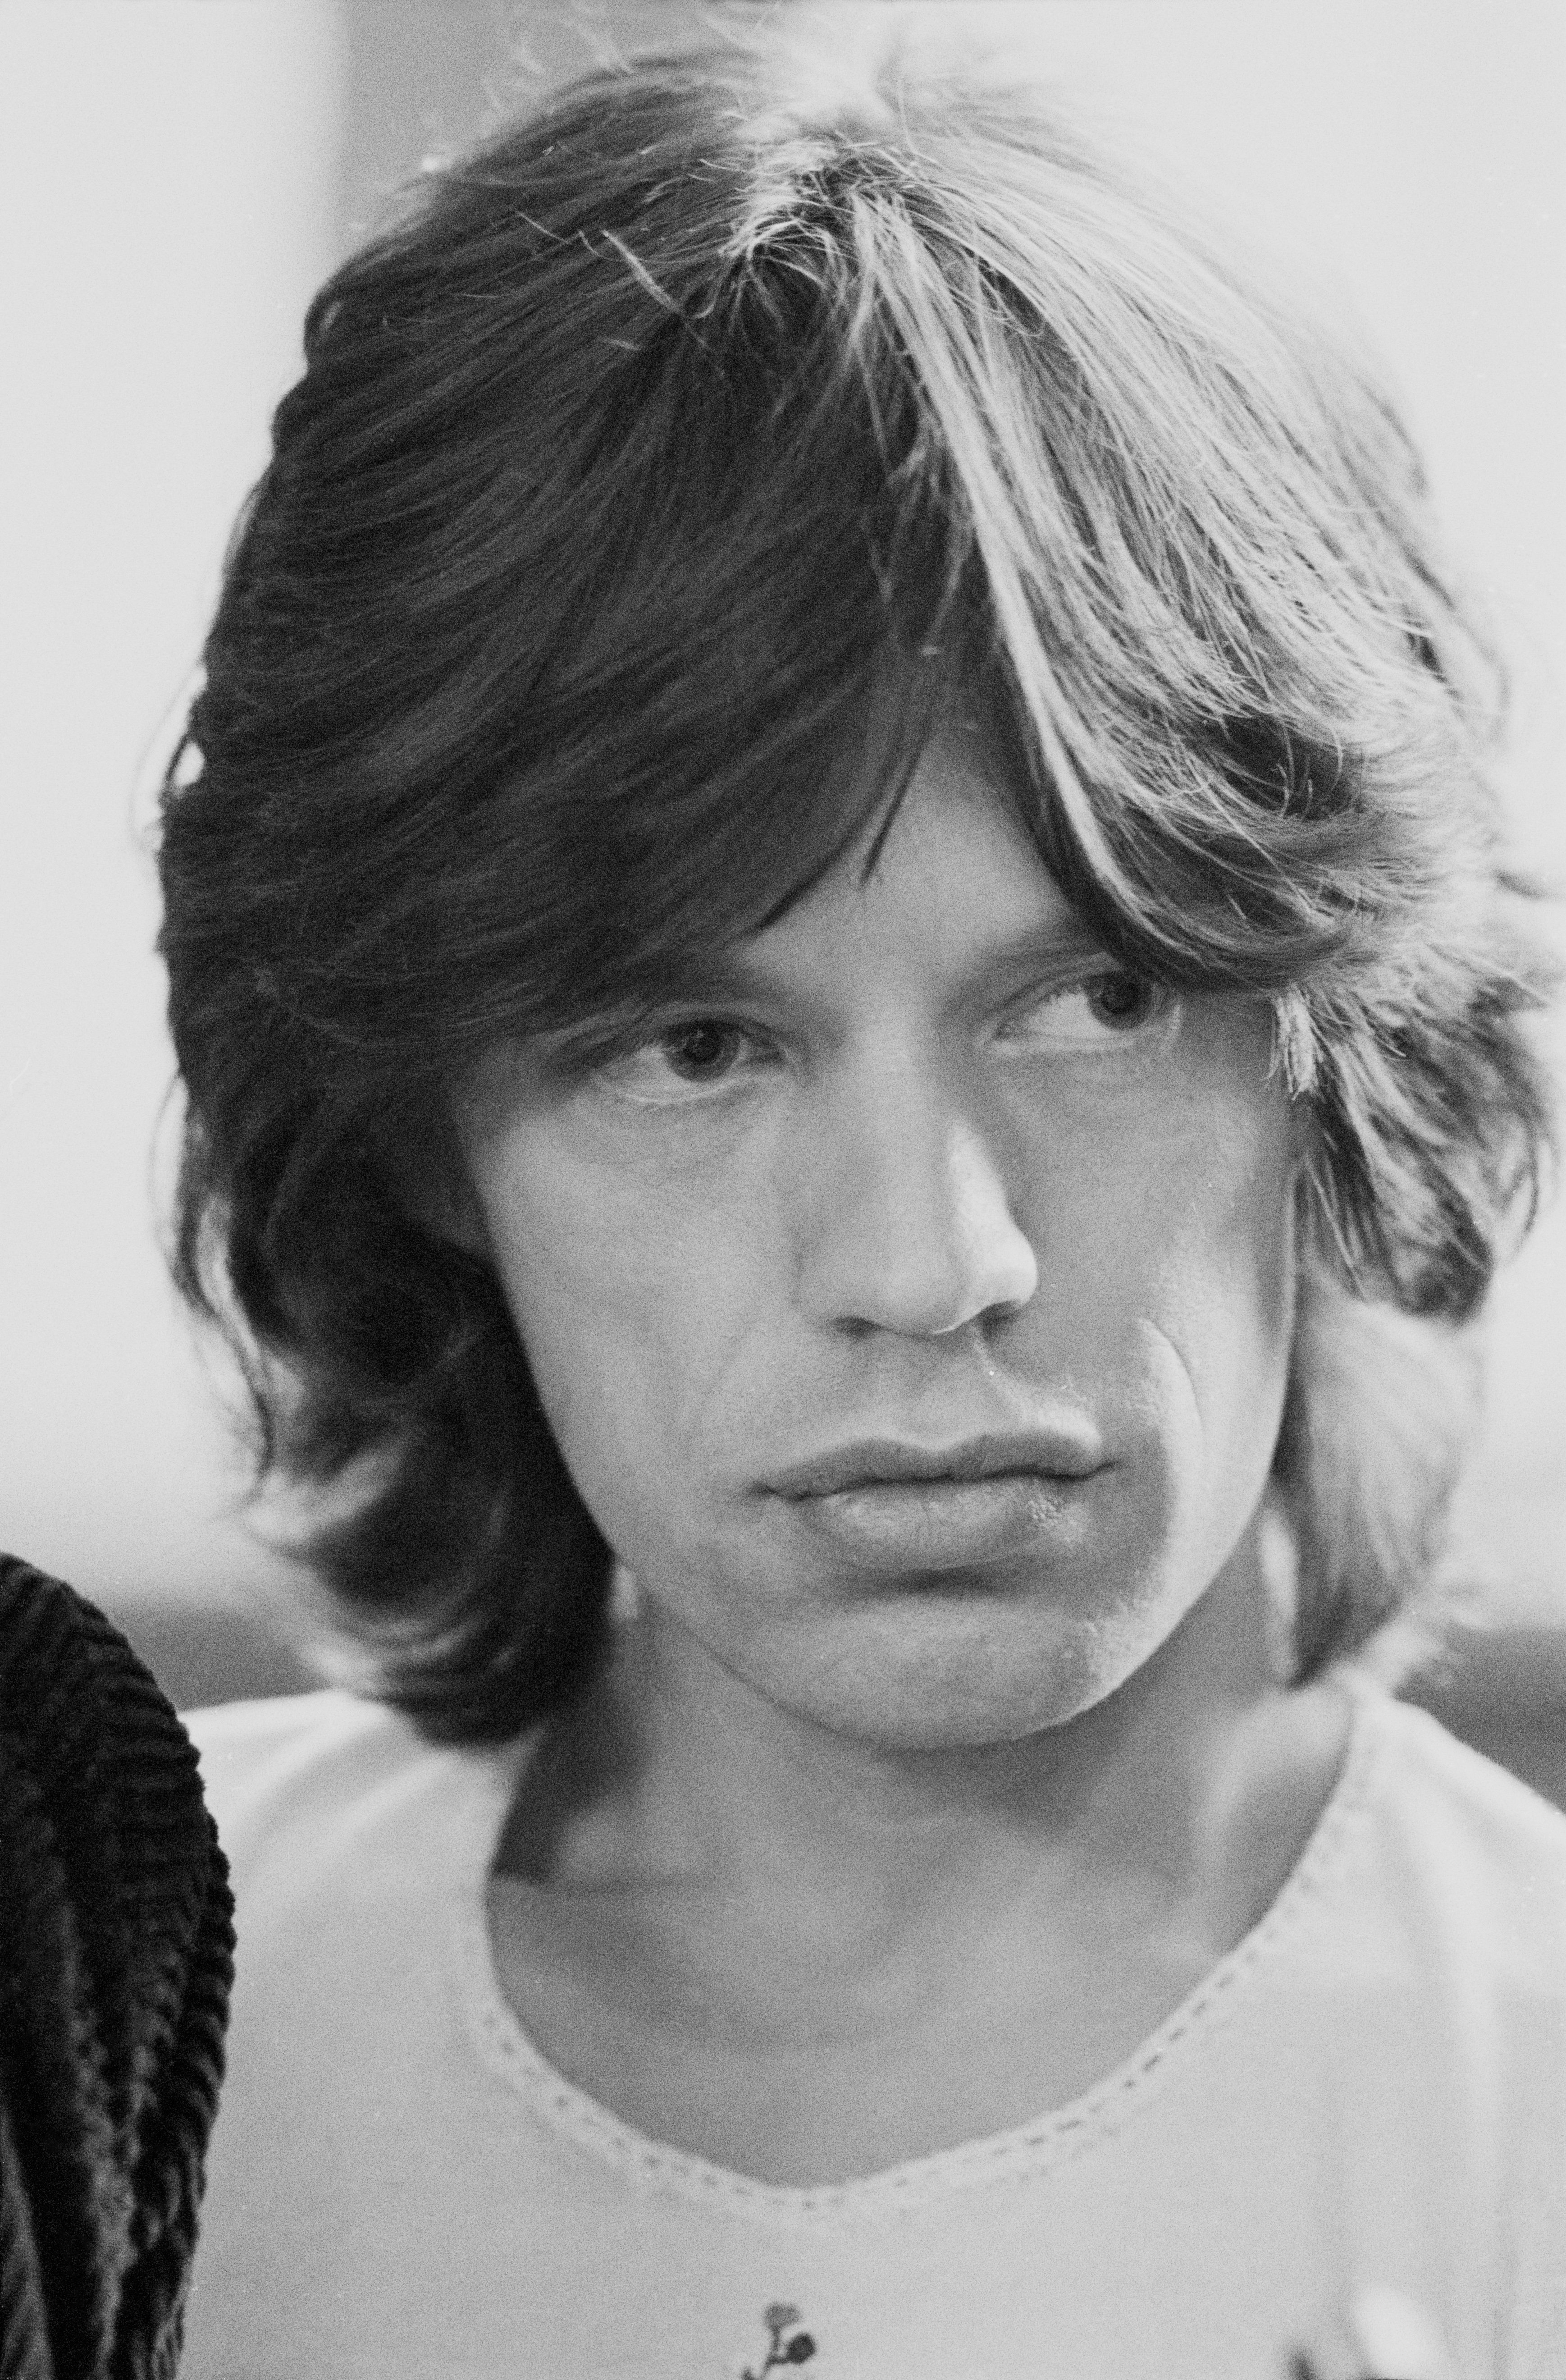 Le chanteur anglais Mick Jagger à Londres, 1972. | Source : Getty Images